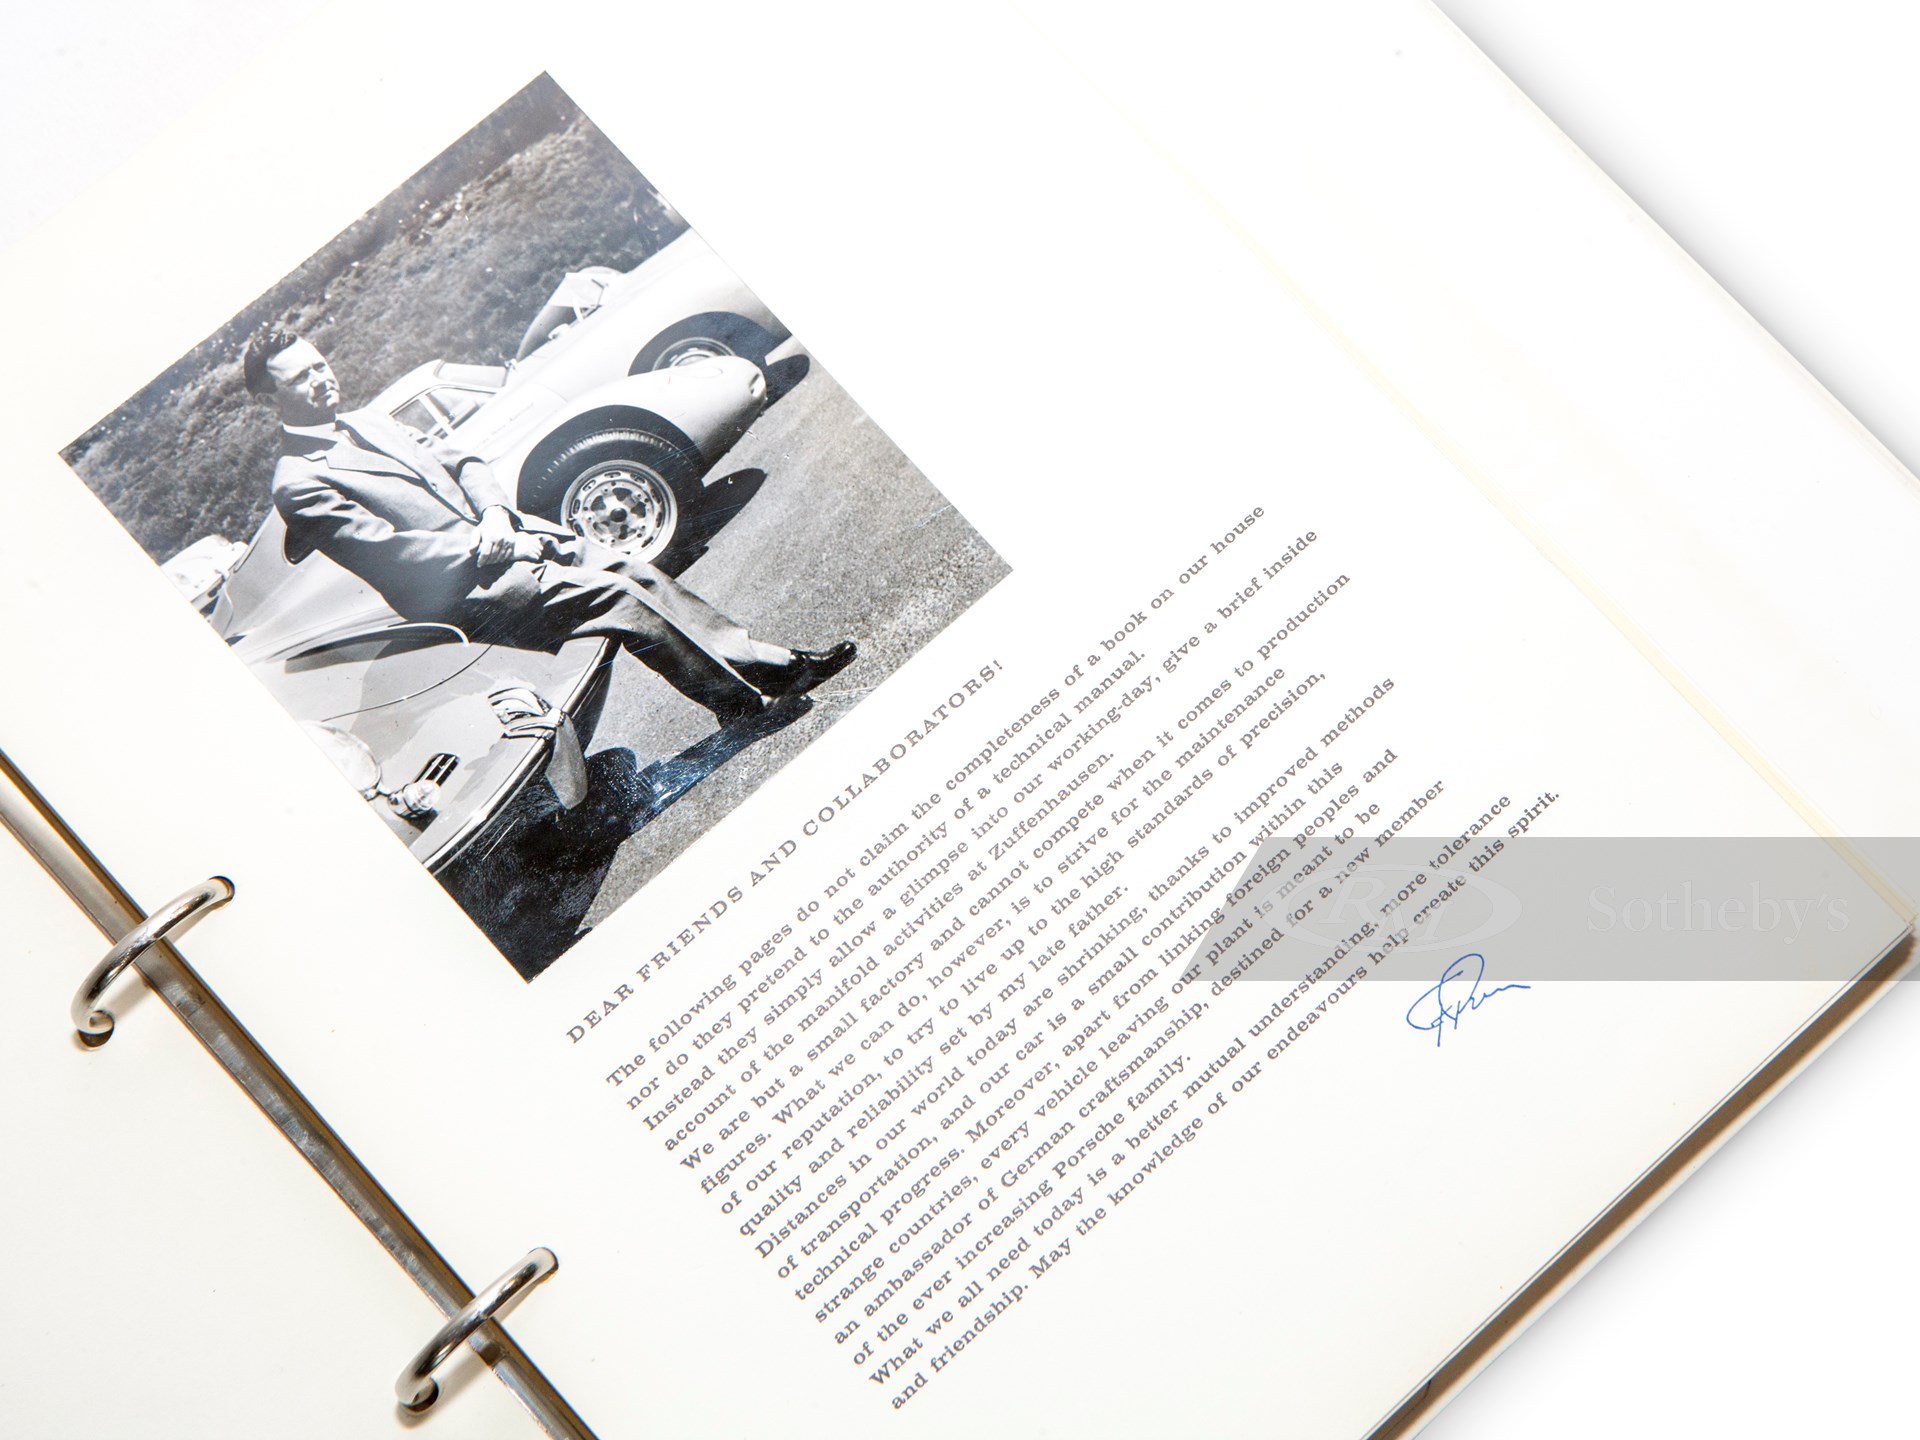 Porsche Dealer Training Program Book, 1960 | A Lifetime of Porsche